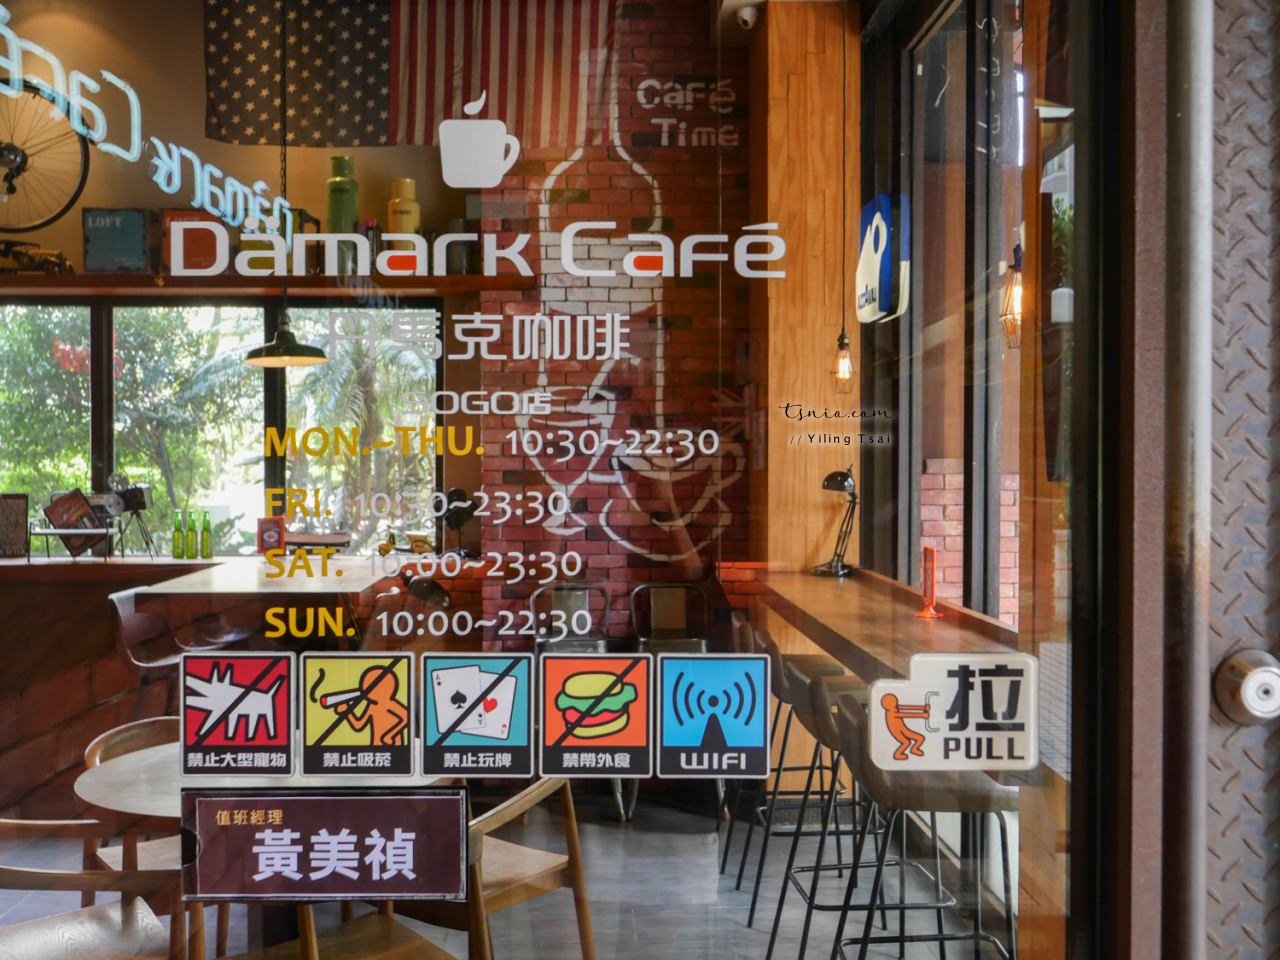 桃園中壢美食推薦 丹馬克咖啡 Dämark café 復古美式風格餐廳